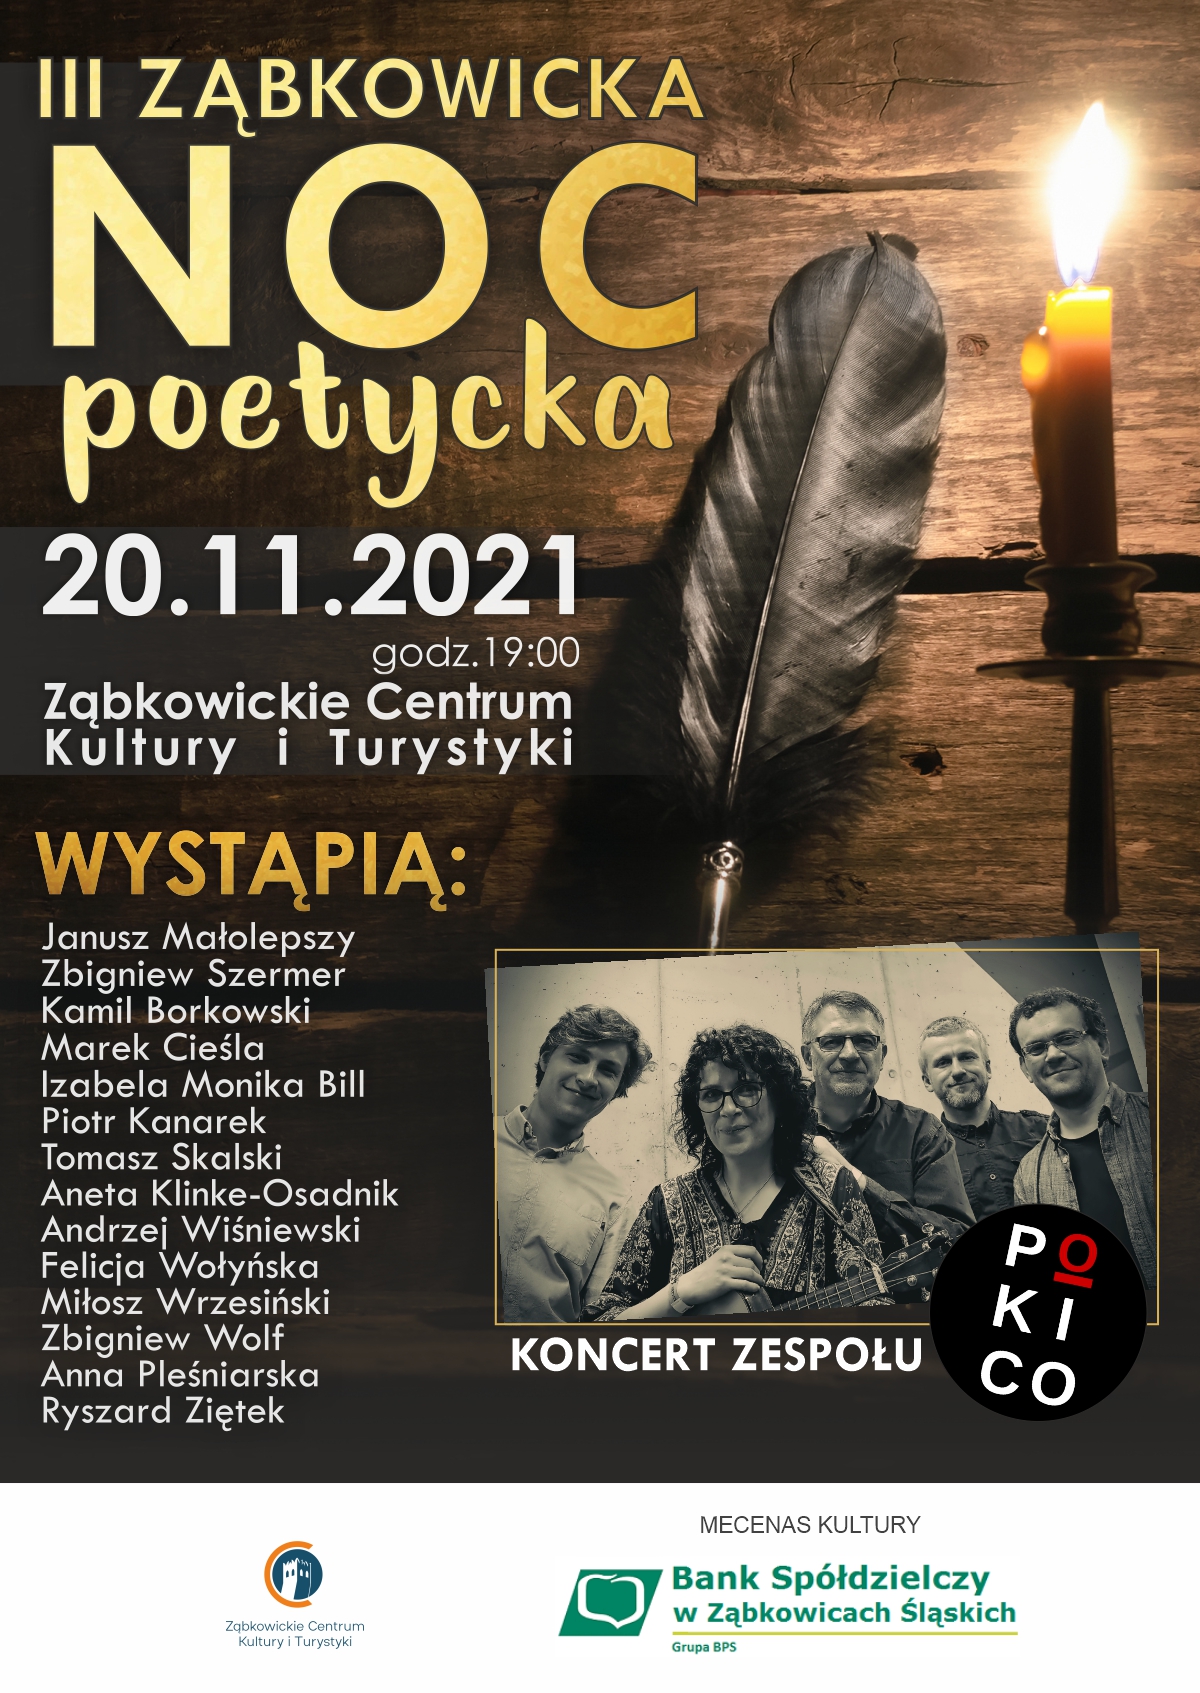 III Ząbkowicka NOC poetycka 20.11.2021r, godz 19:00